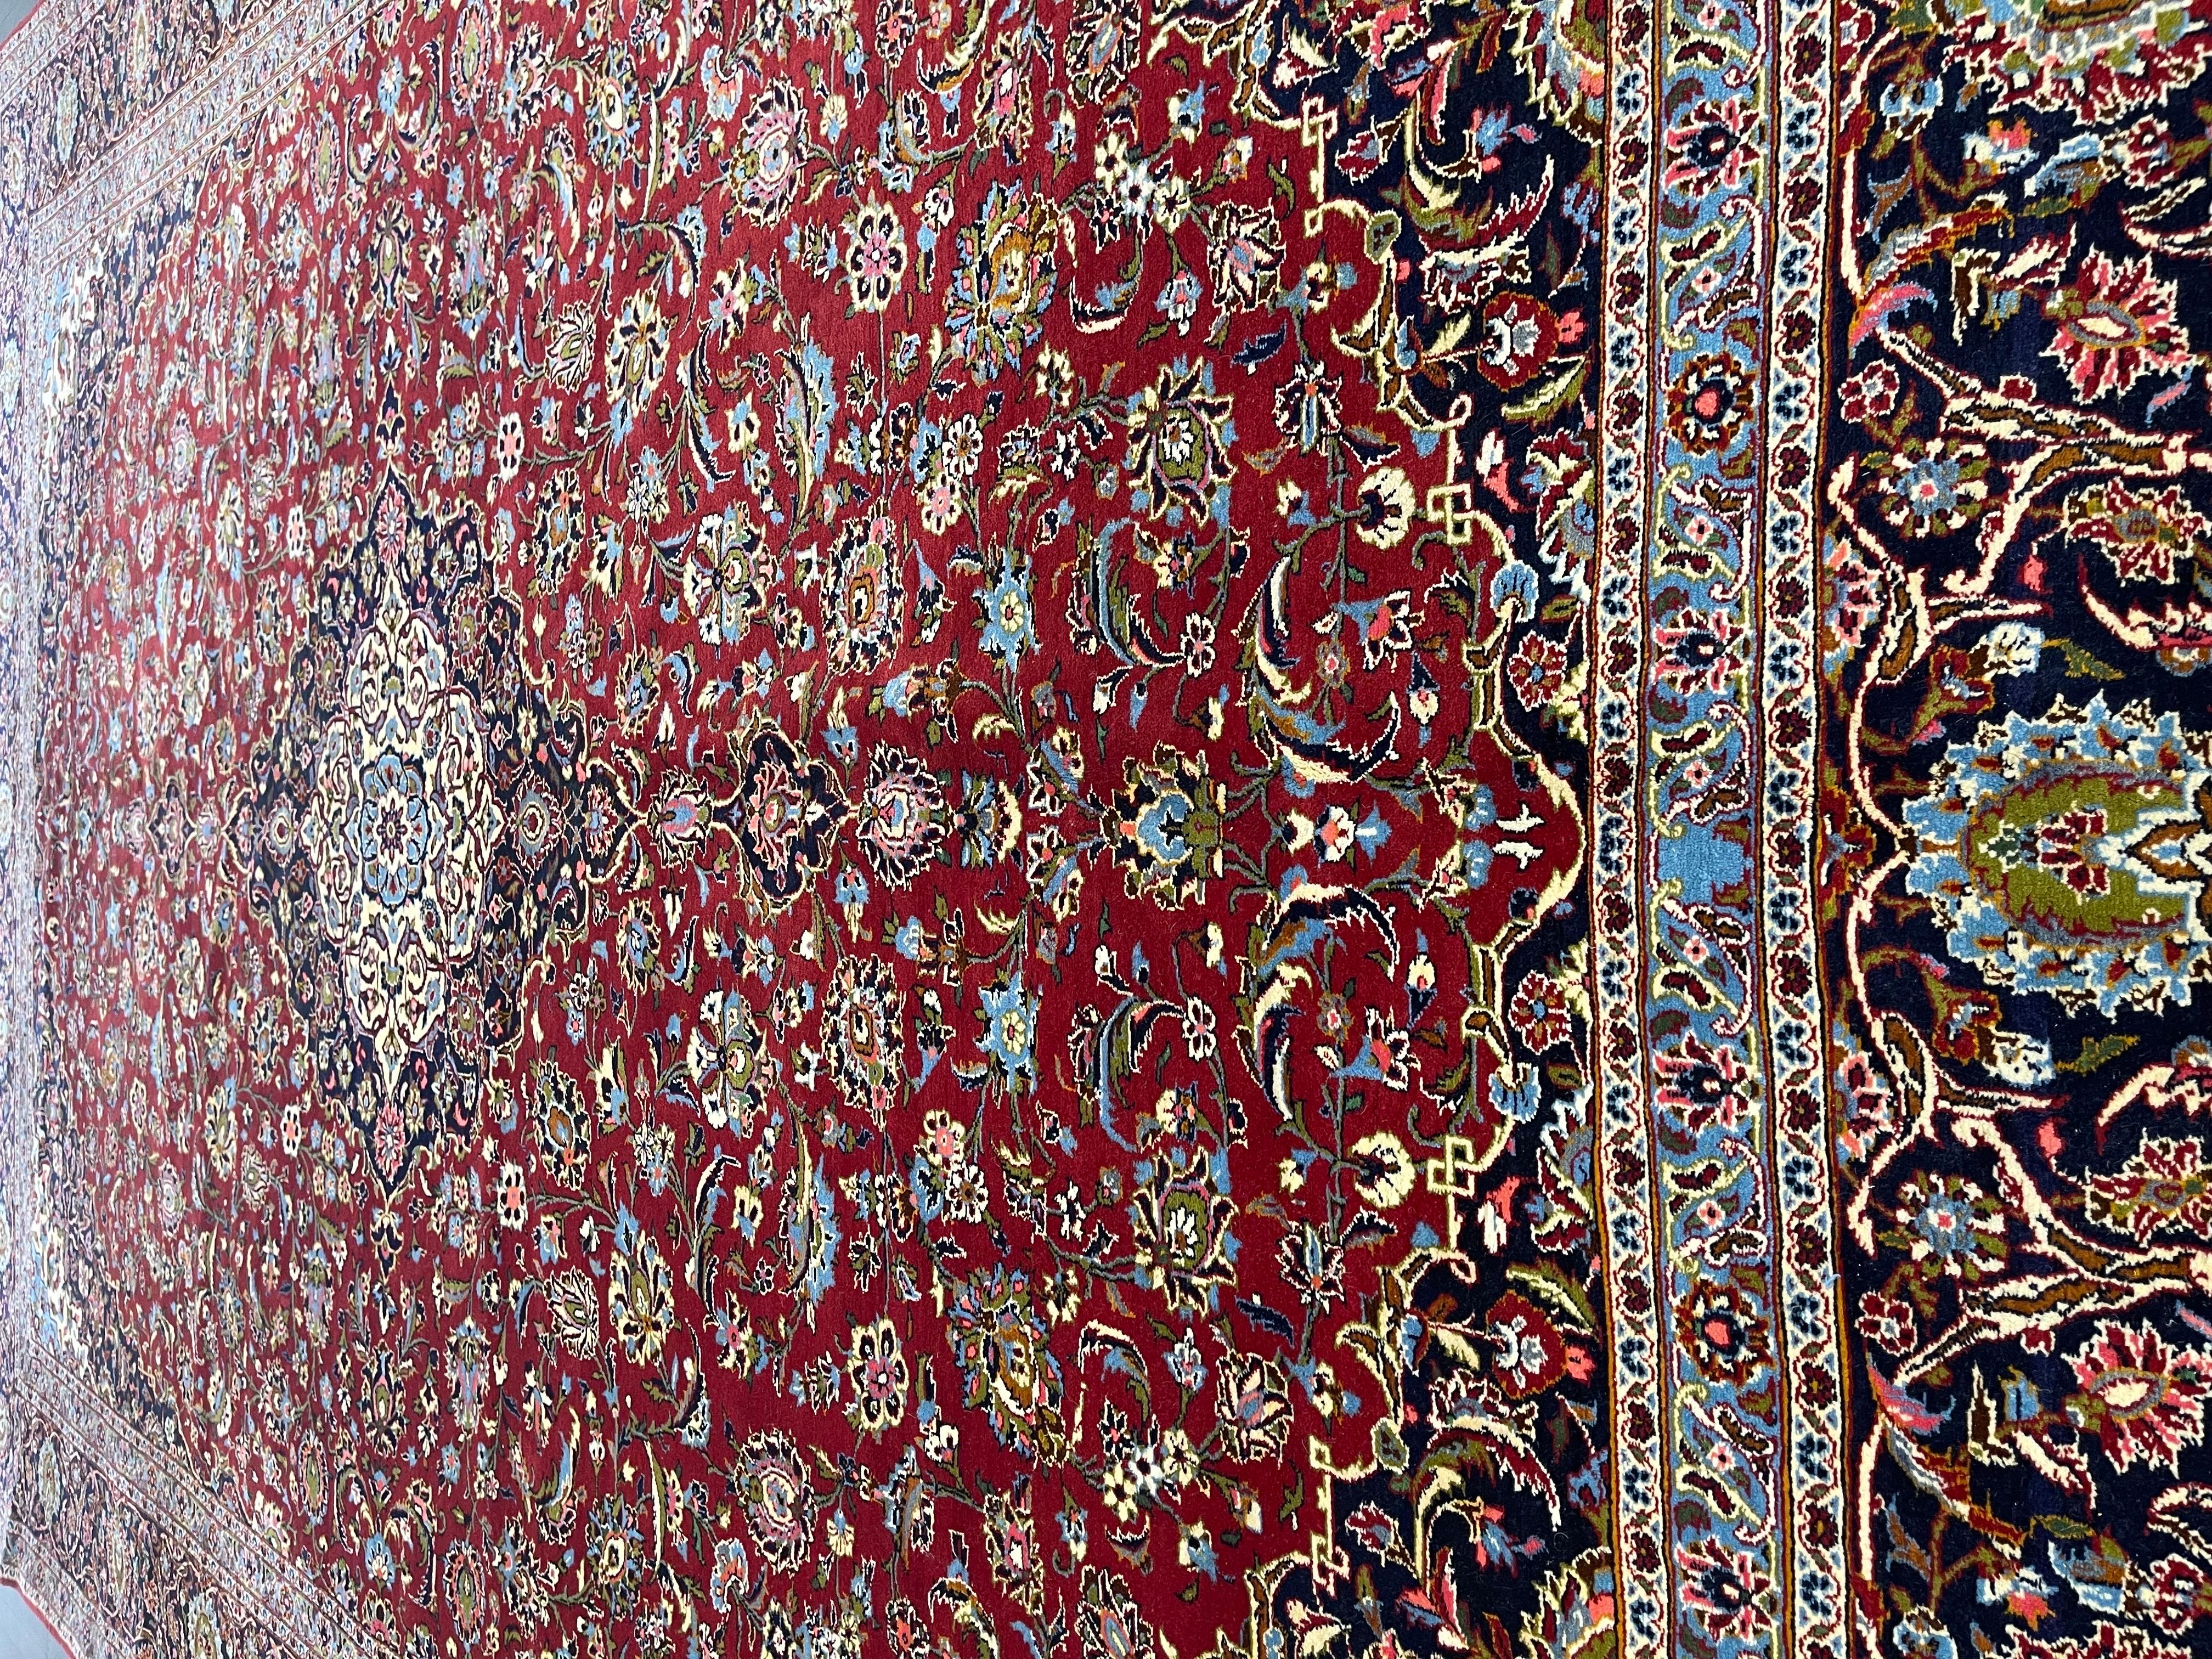 Un tapis persan classique tissé à la main par d'habiles tisserands de Kashan, un important centre de fabrication de tapis dans l'ouest de l'Iran. Avec un champ rouge tomate décoré de fleurs et de feuilles autour d'un médaillon central bleu marine et